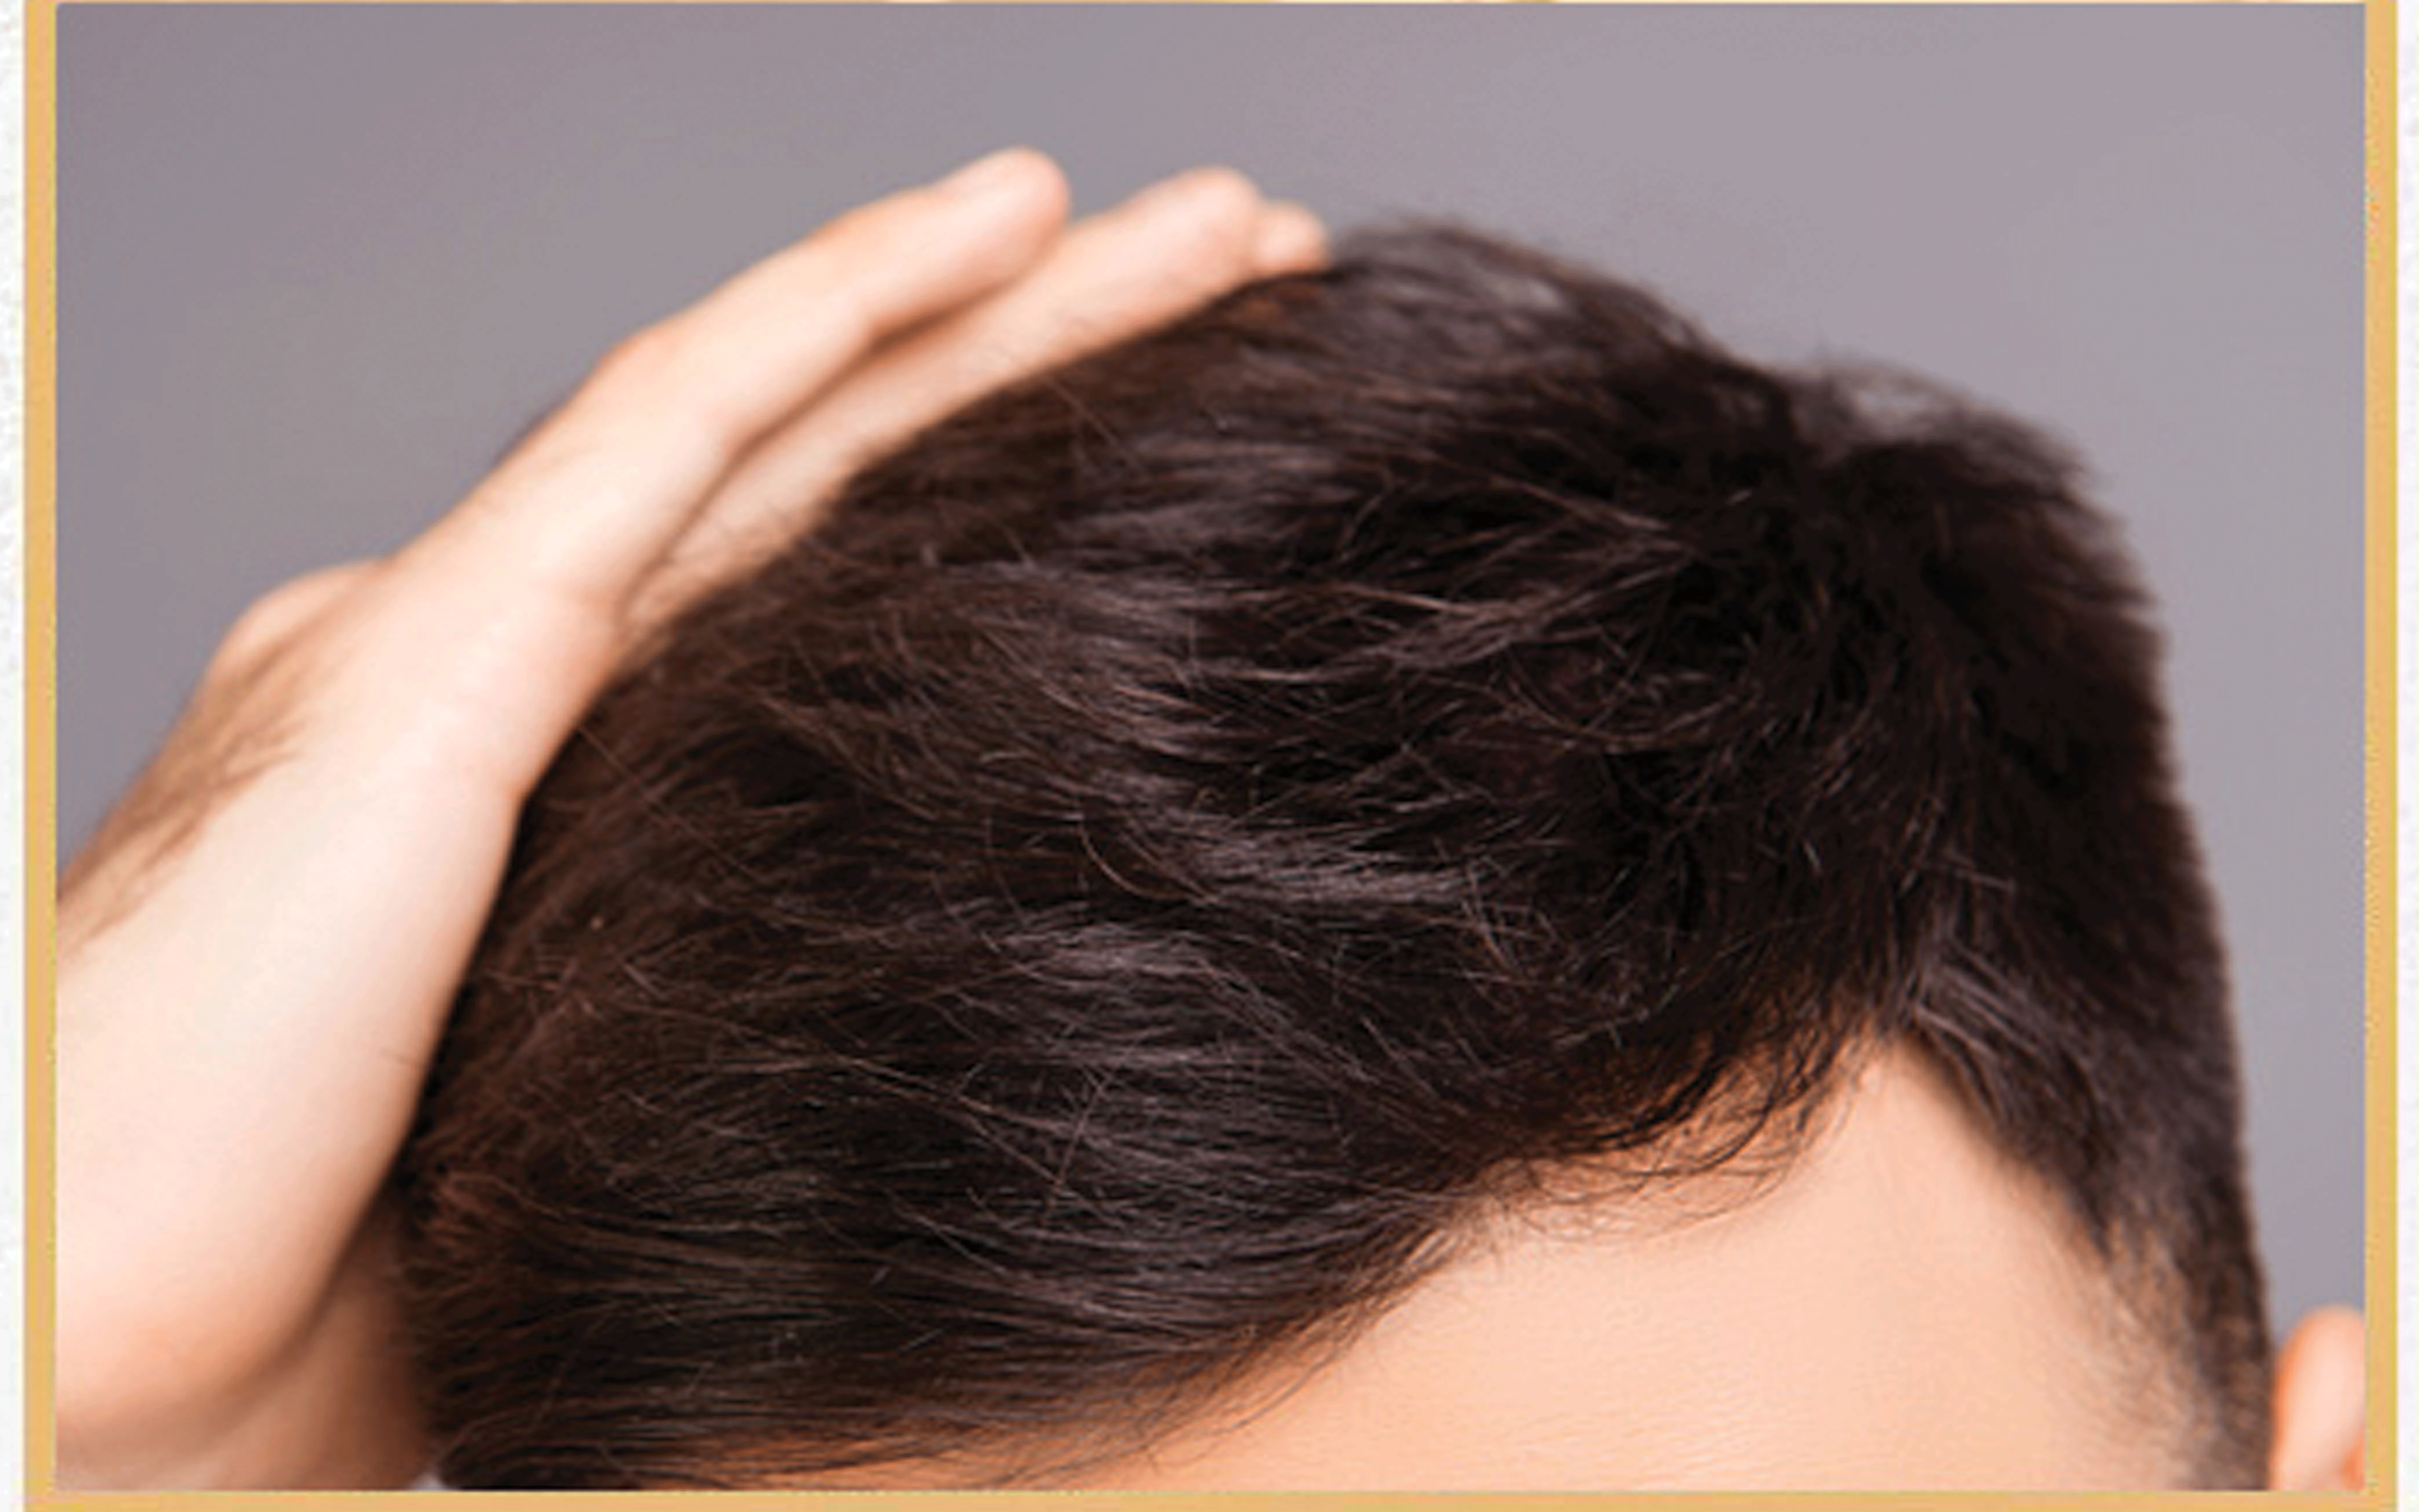 آیا پروتئین تراپی مو باعث آسیب به موها می شود؟